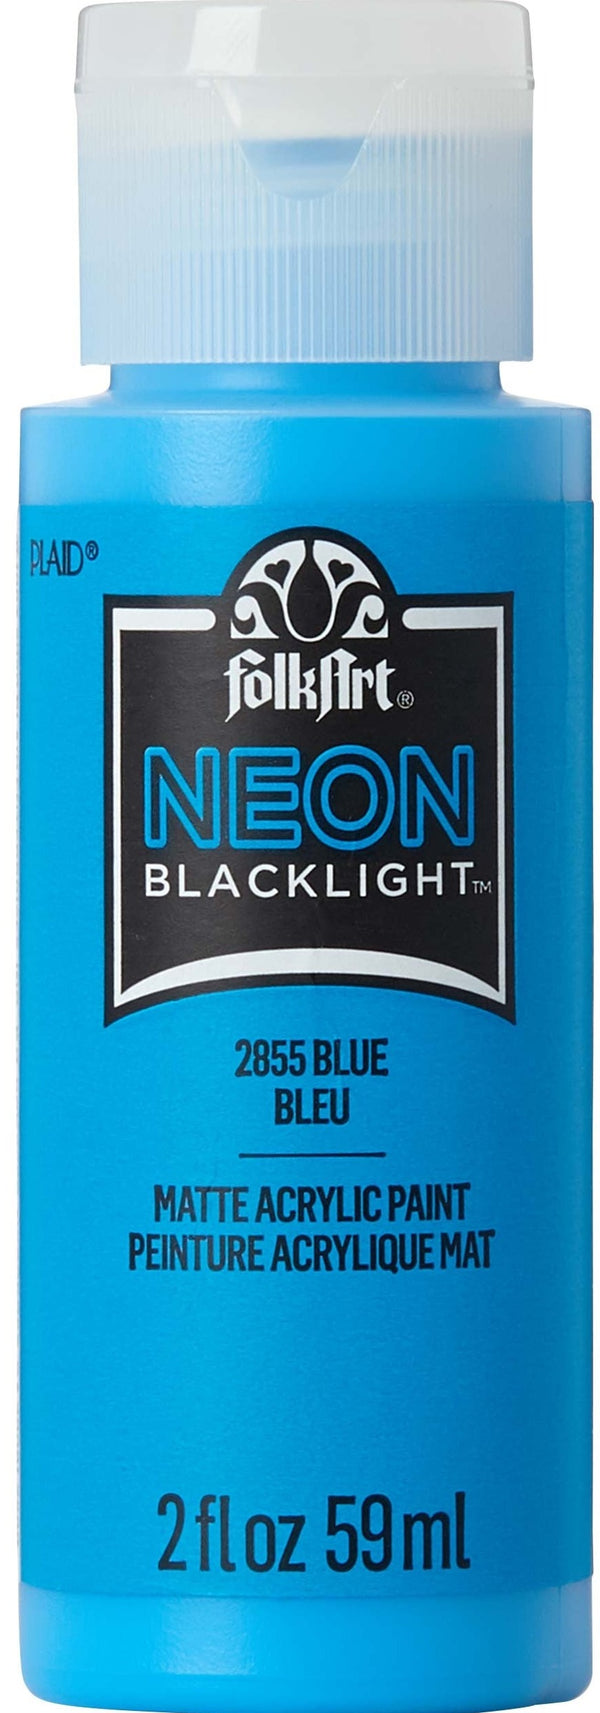 Folk Art Acrylic Paint Neon Blacklight 2oz/59ml#Colour_BLUE